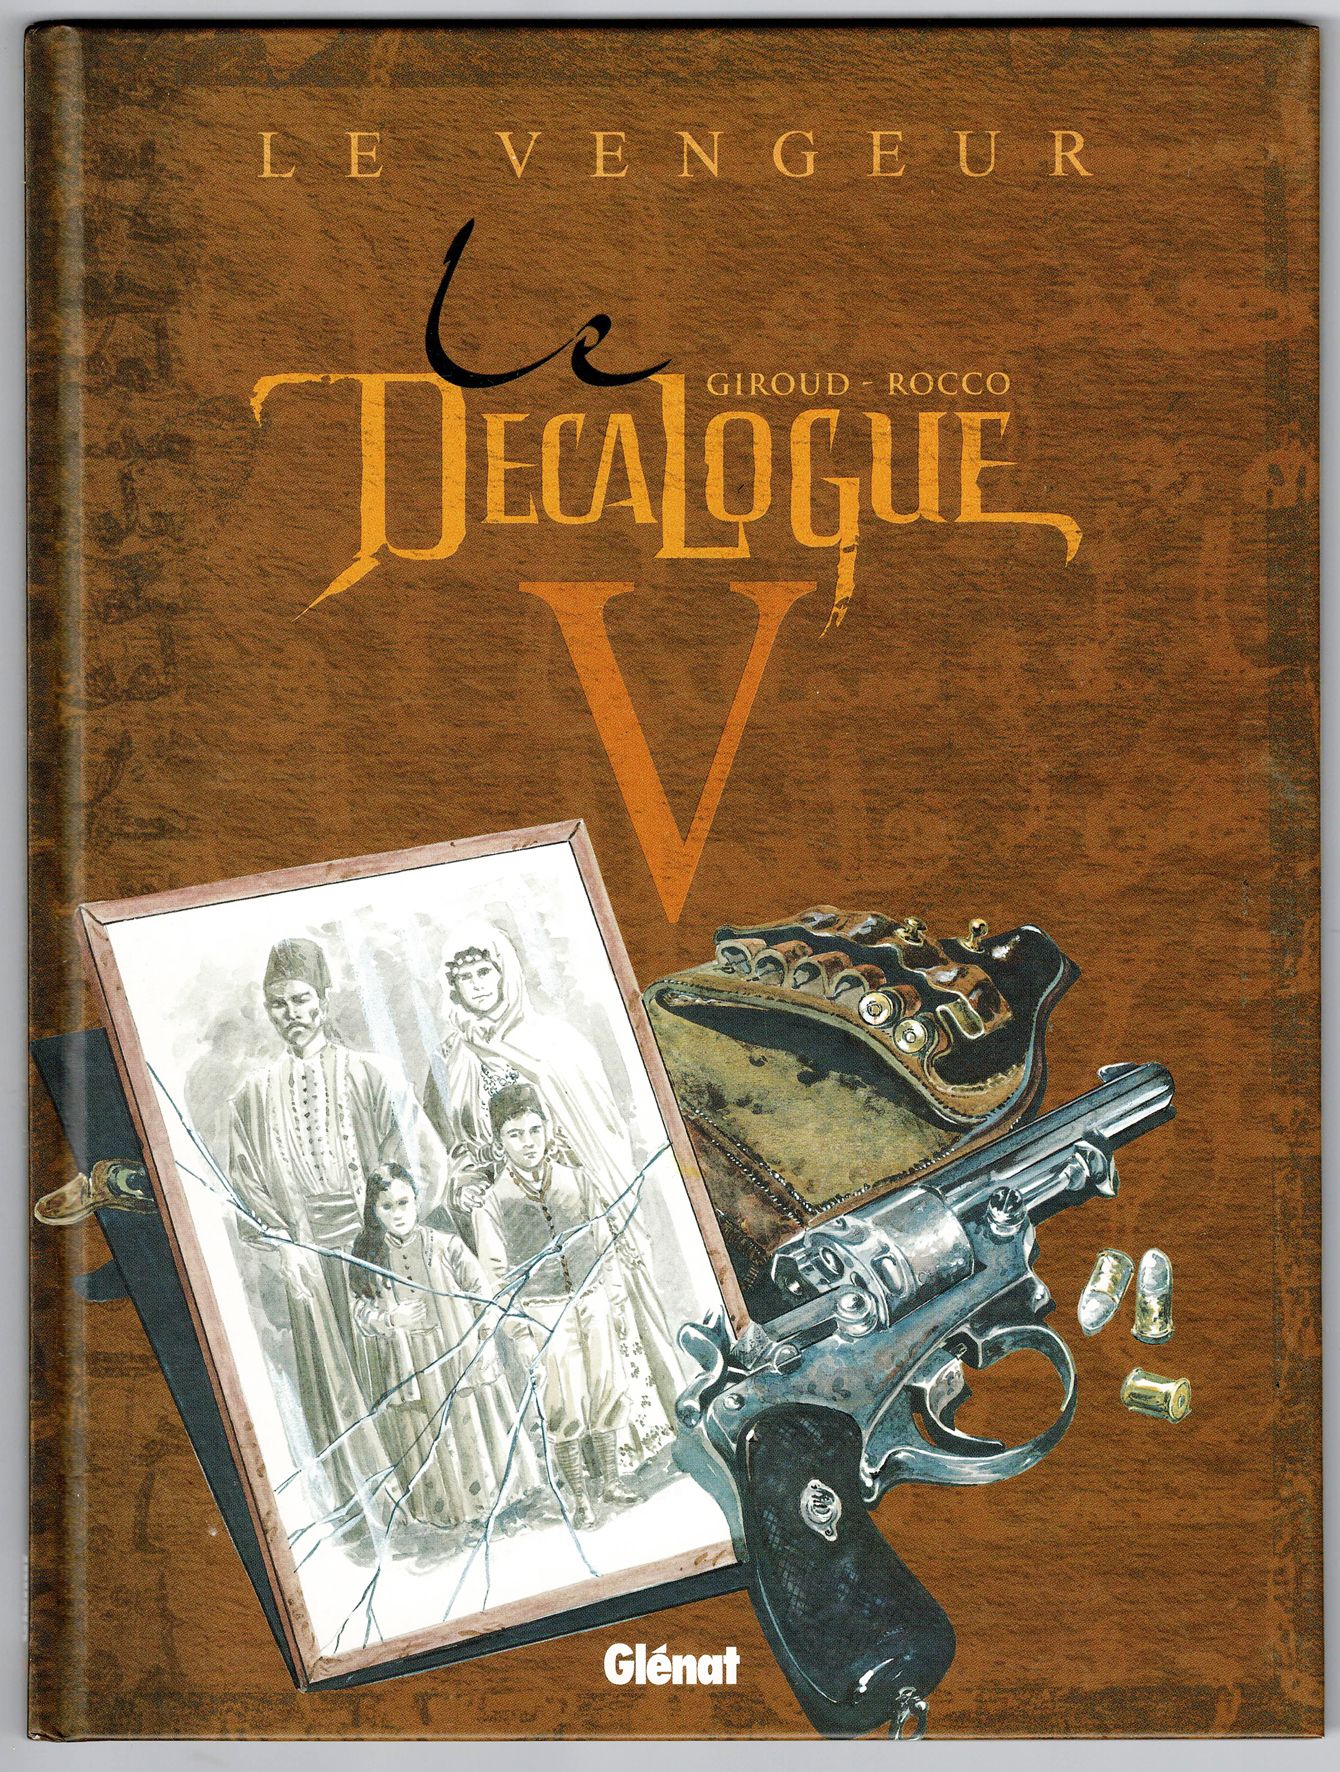 Le décalogue 
第5、6、7、9、10卷和特别版。一套6本的专辑，第一版，接近全新的状态。